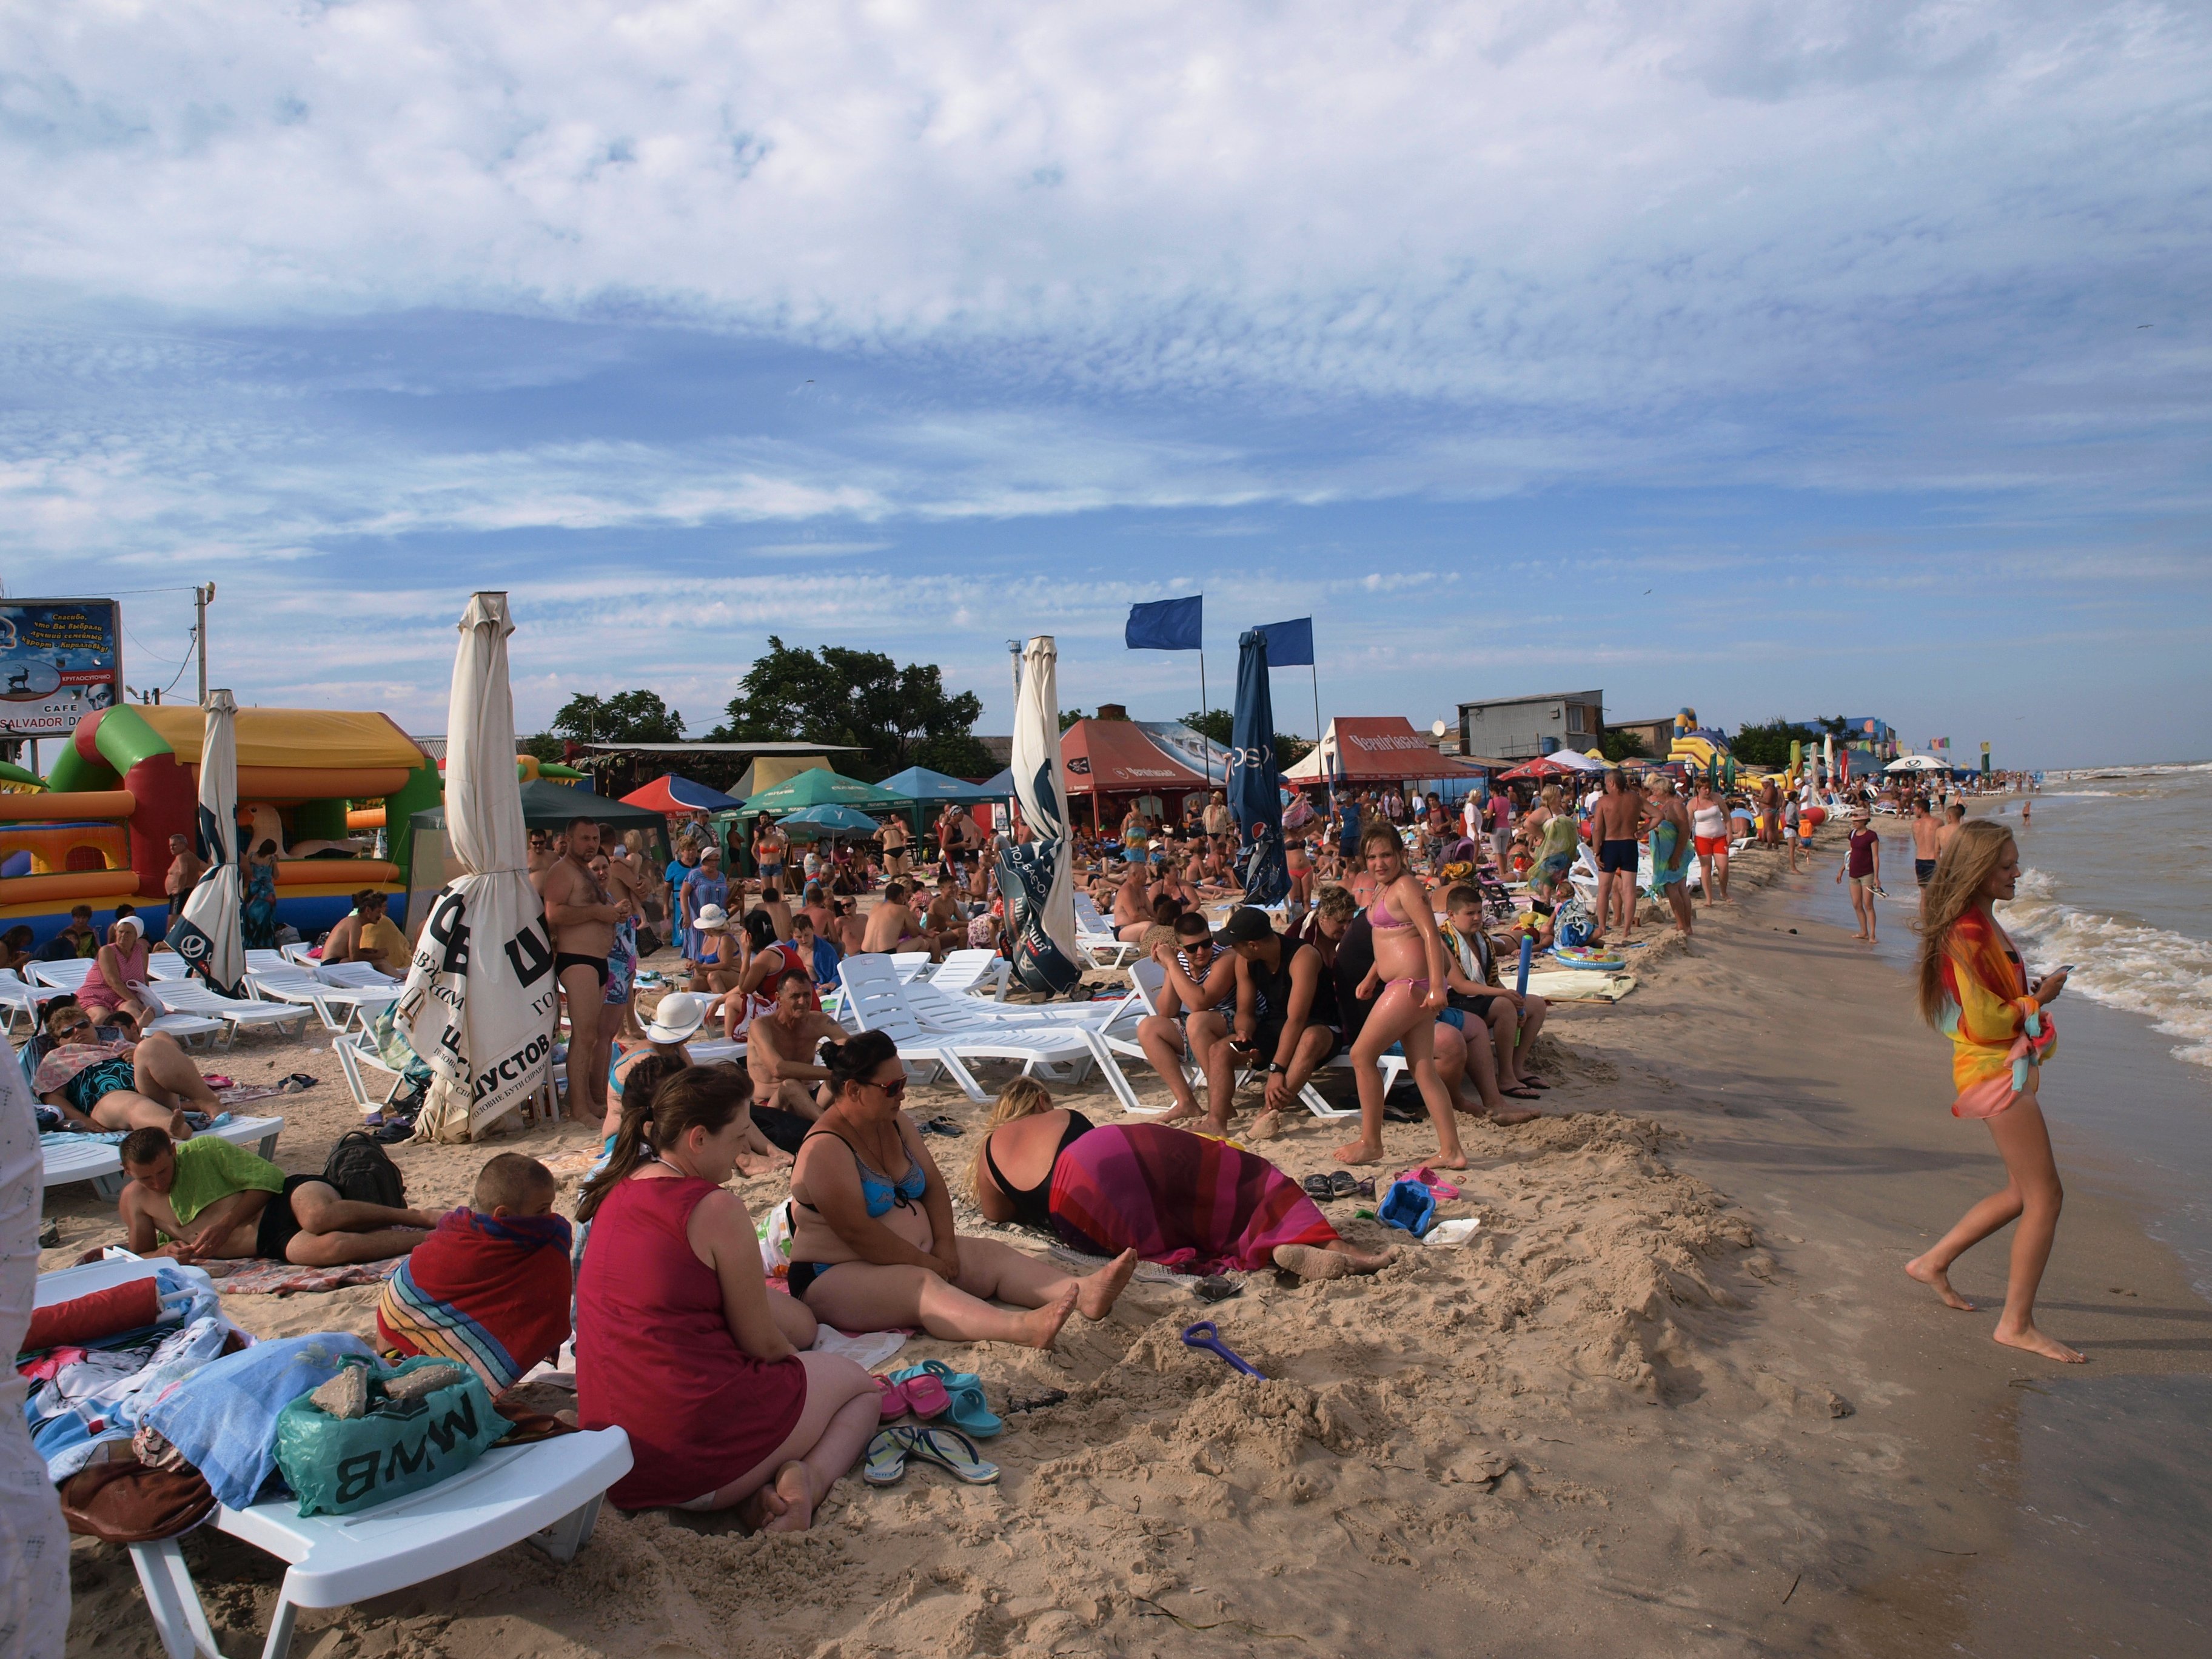 “Лето в самом разгаре”: Кирилловские пляжи переполнены (видео)